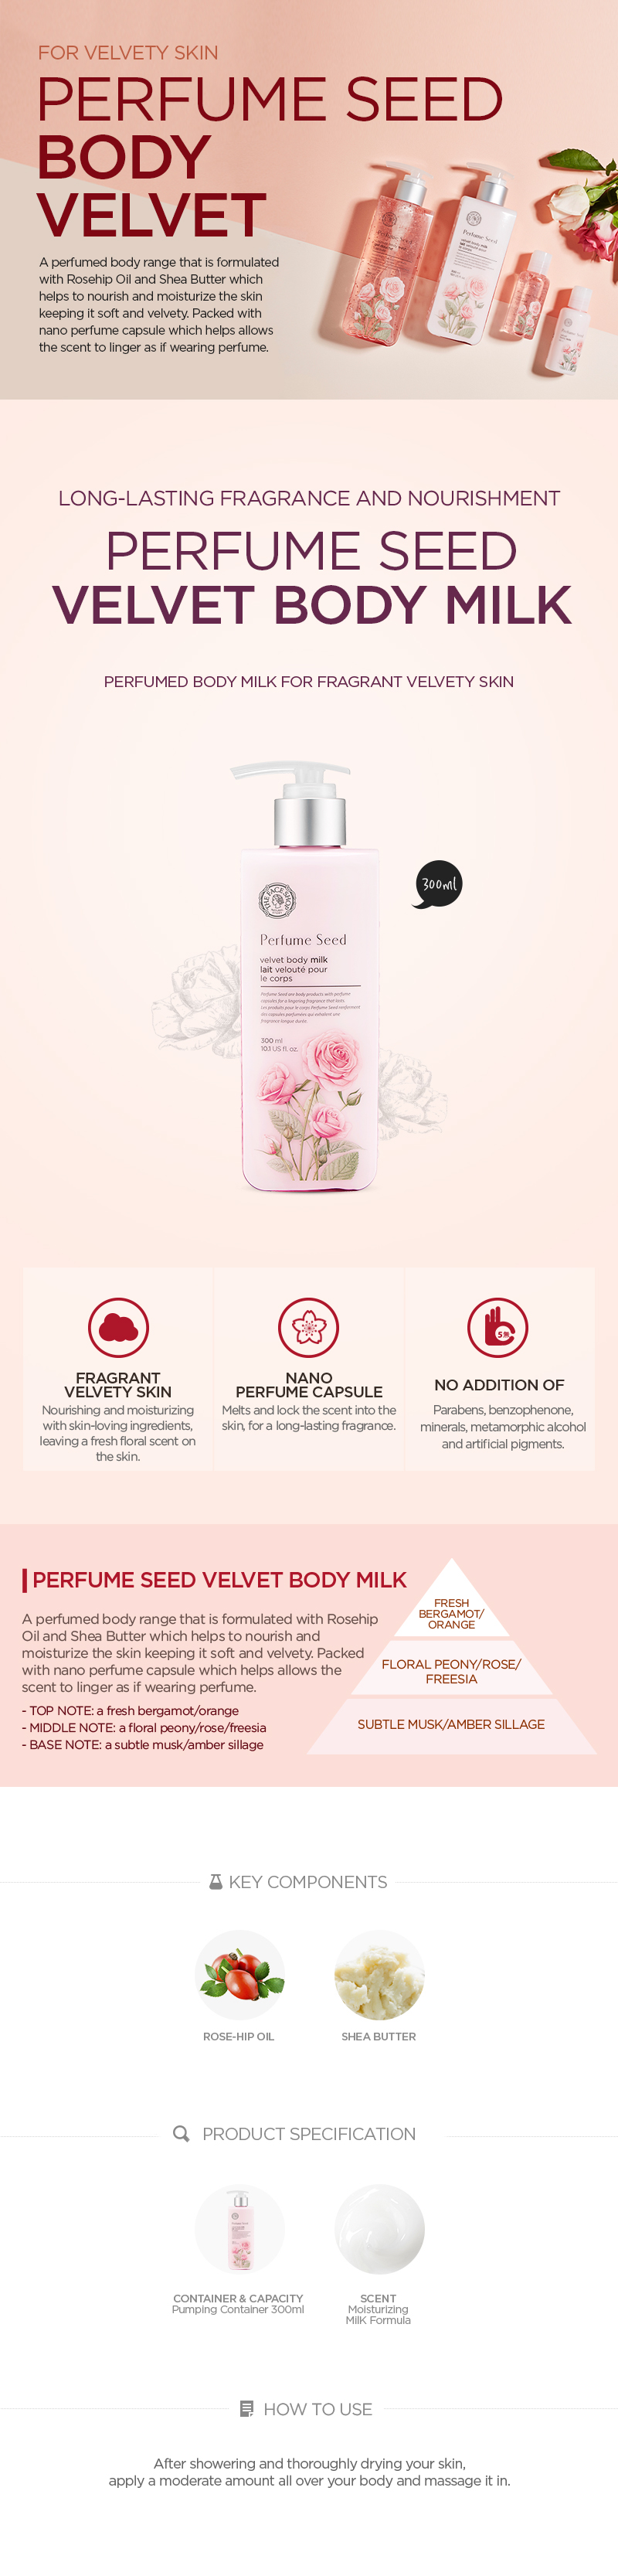 Perfume Seed Velvet Body Milk